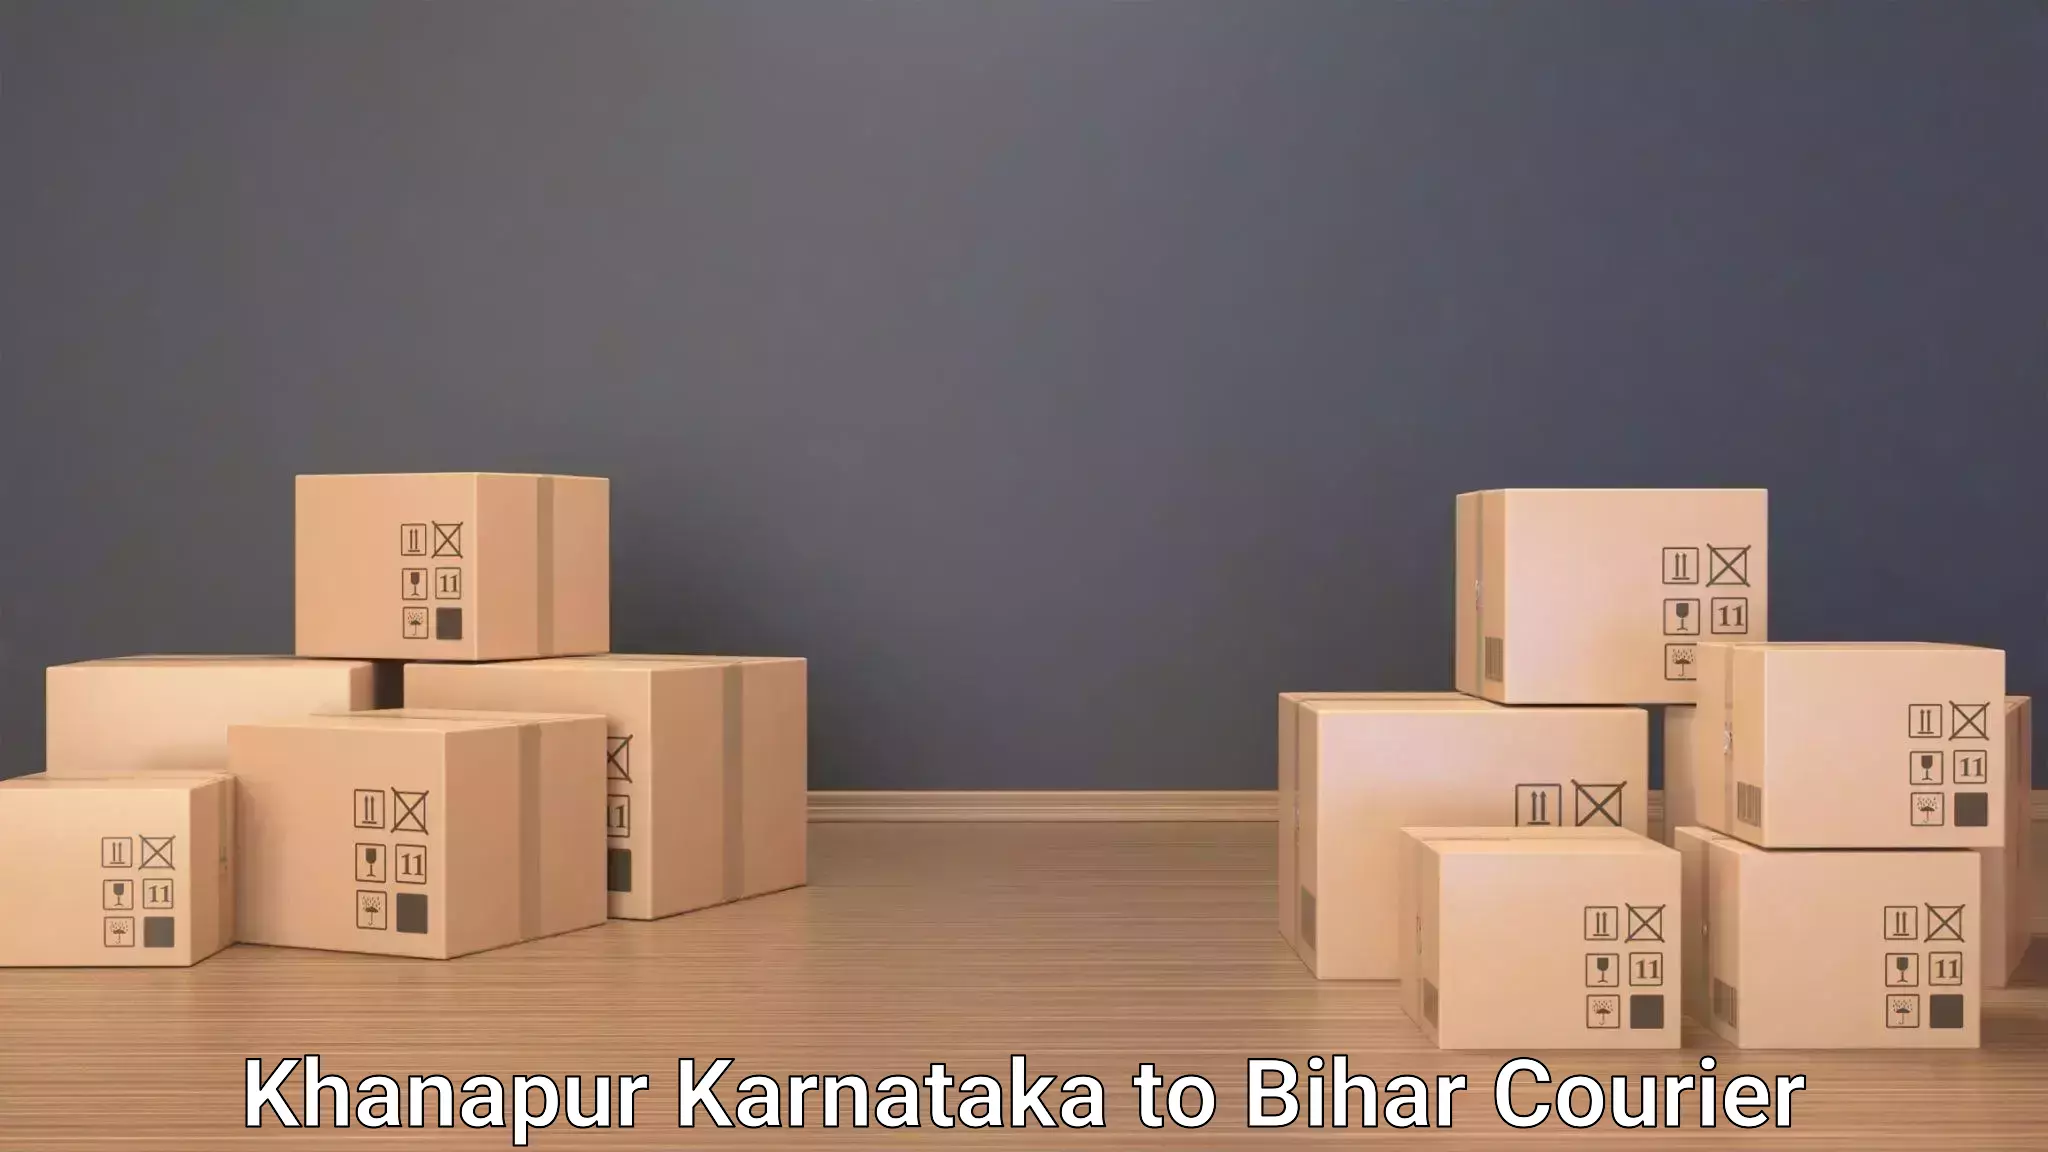 Luggage delivery optimization Khanapur Karnataka to Munger